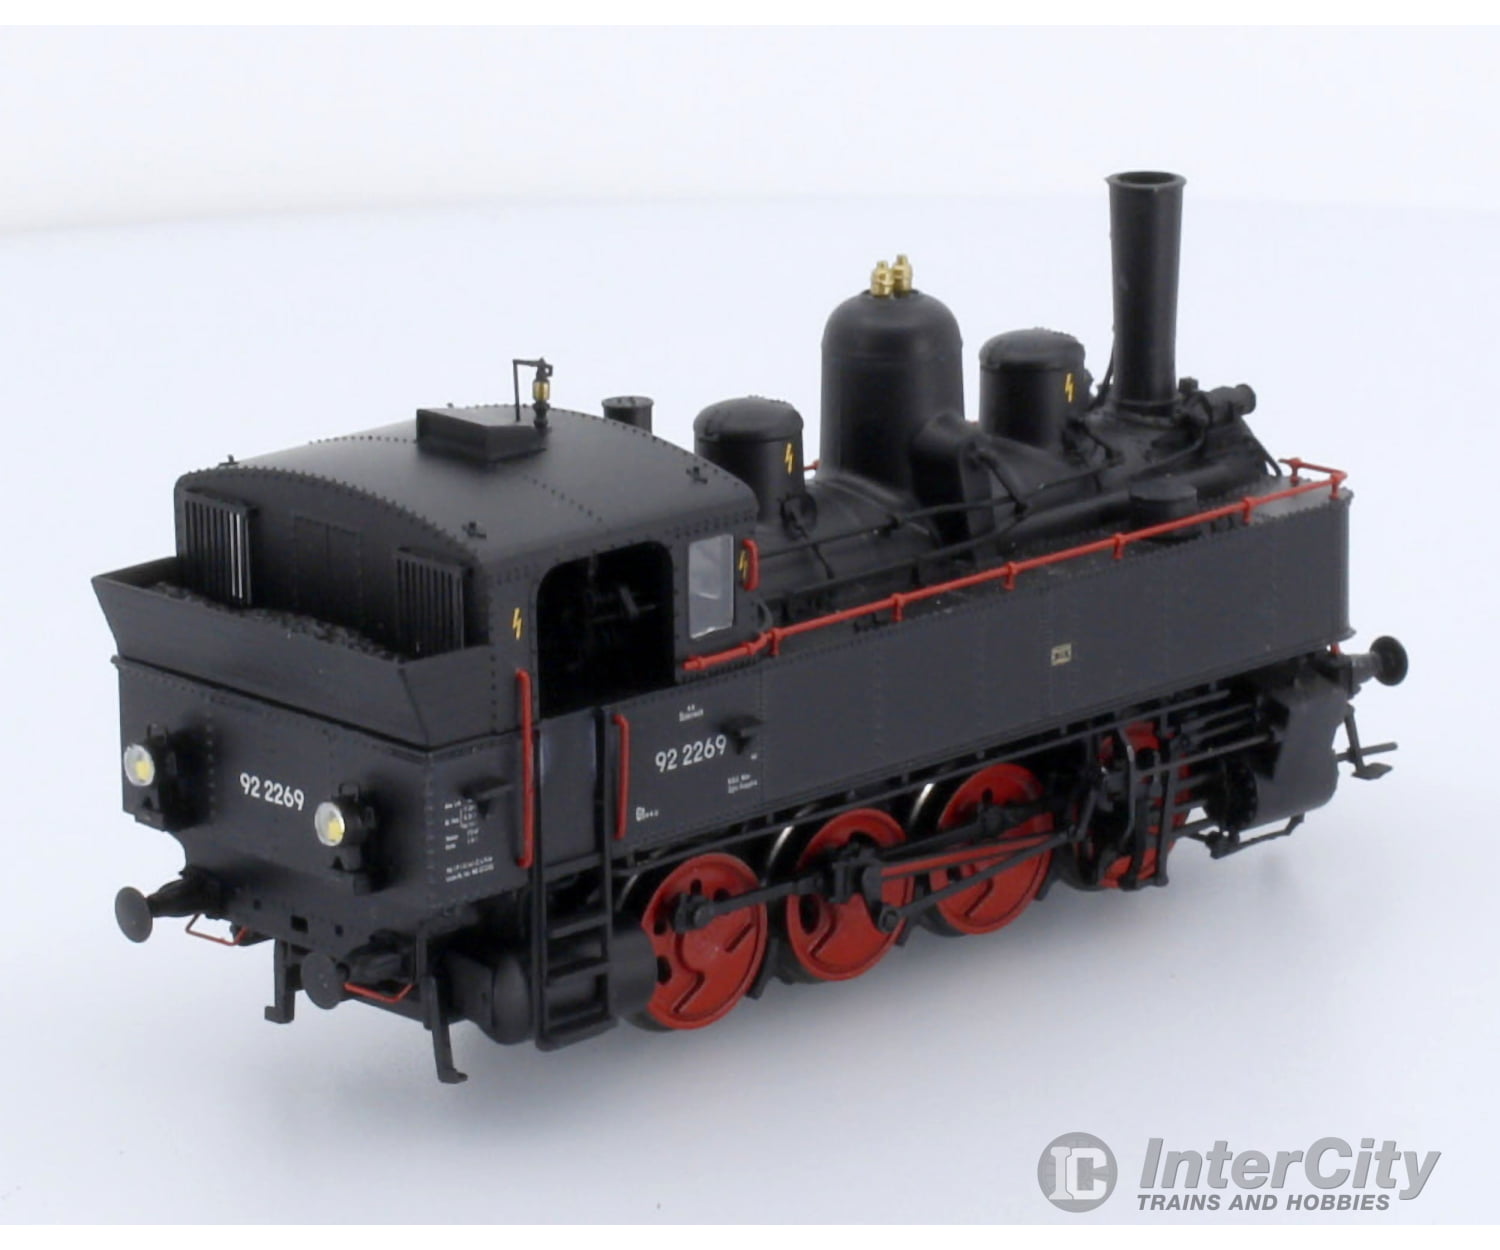 Brawa Ho Scale Austrian Bbo Class 178 Steam Locomotive Era Iii Premium With Dcc/Sound/Smoke